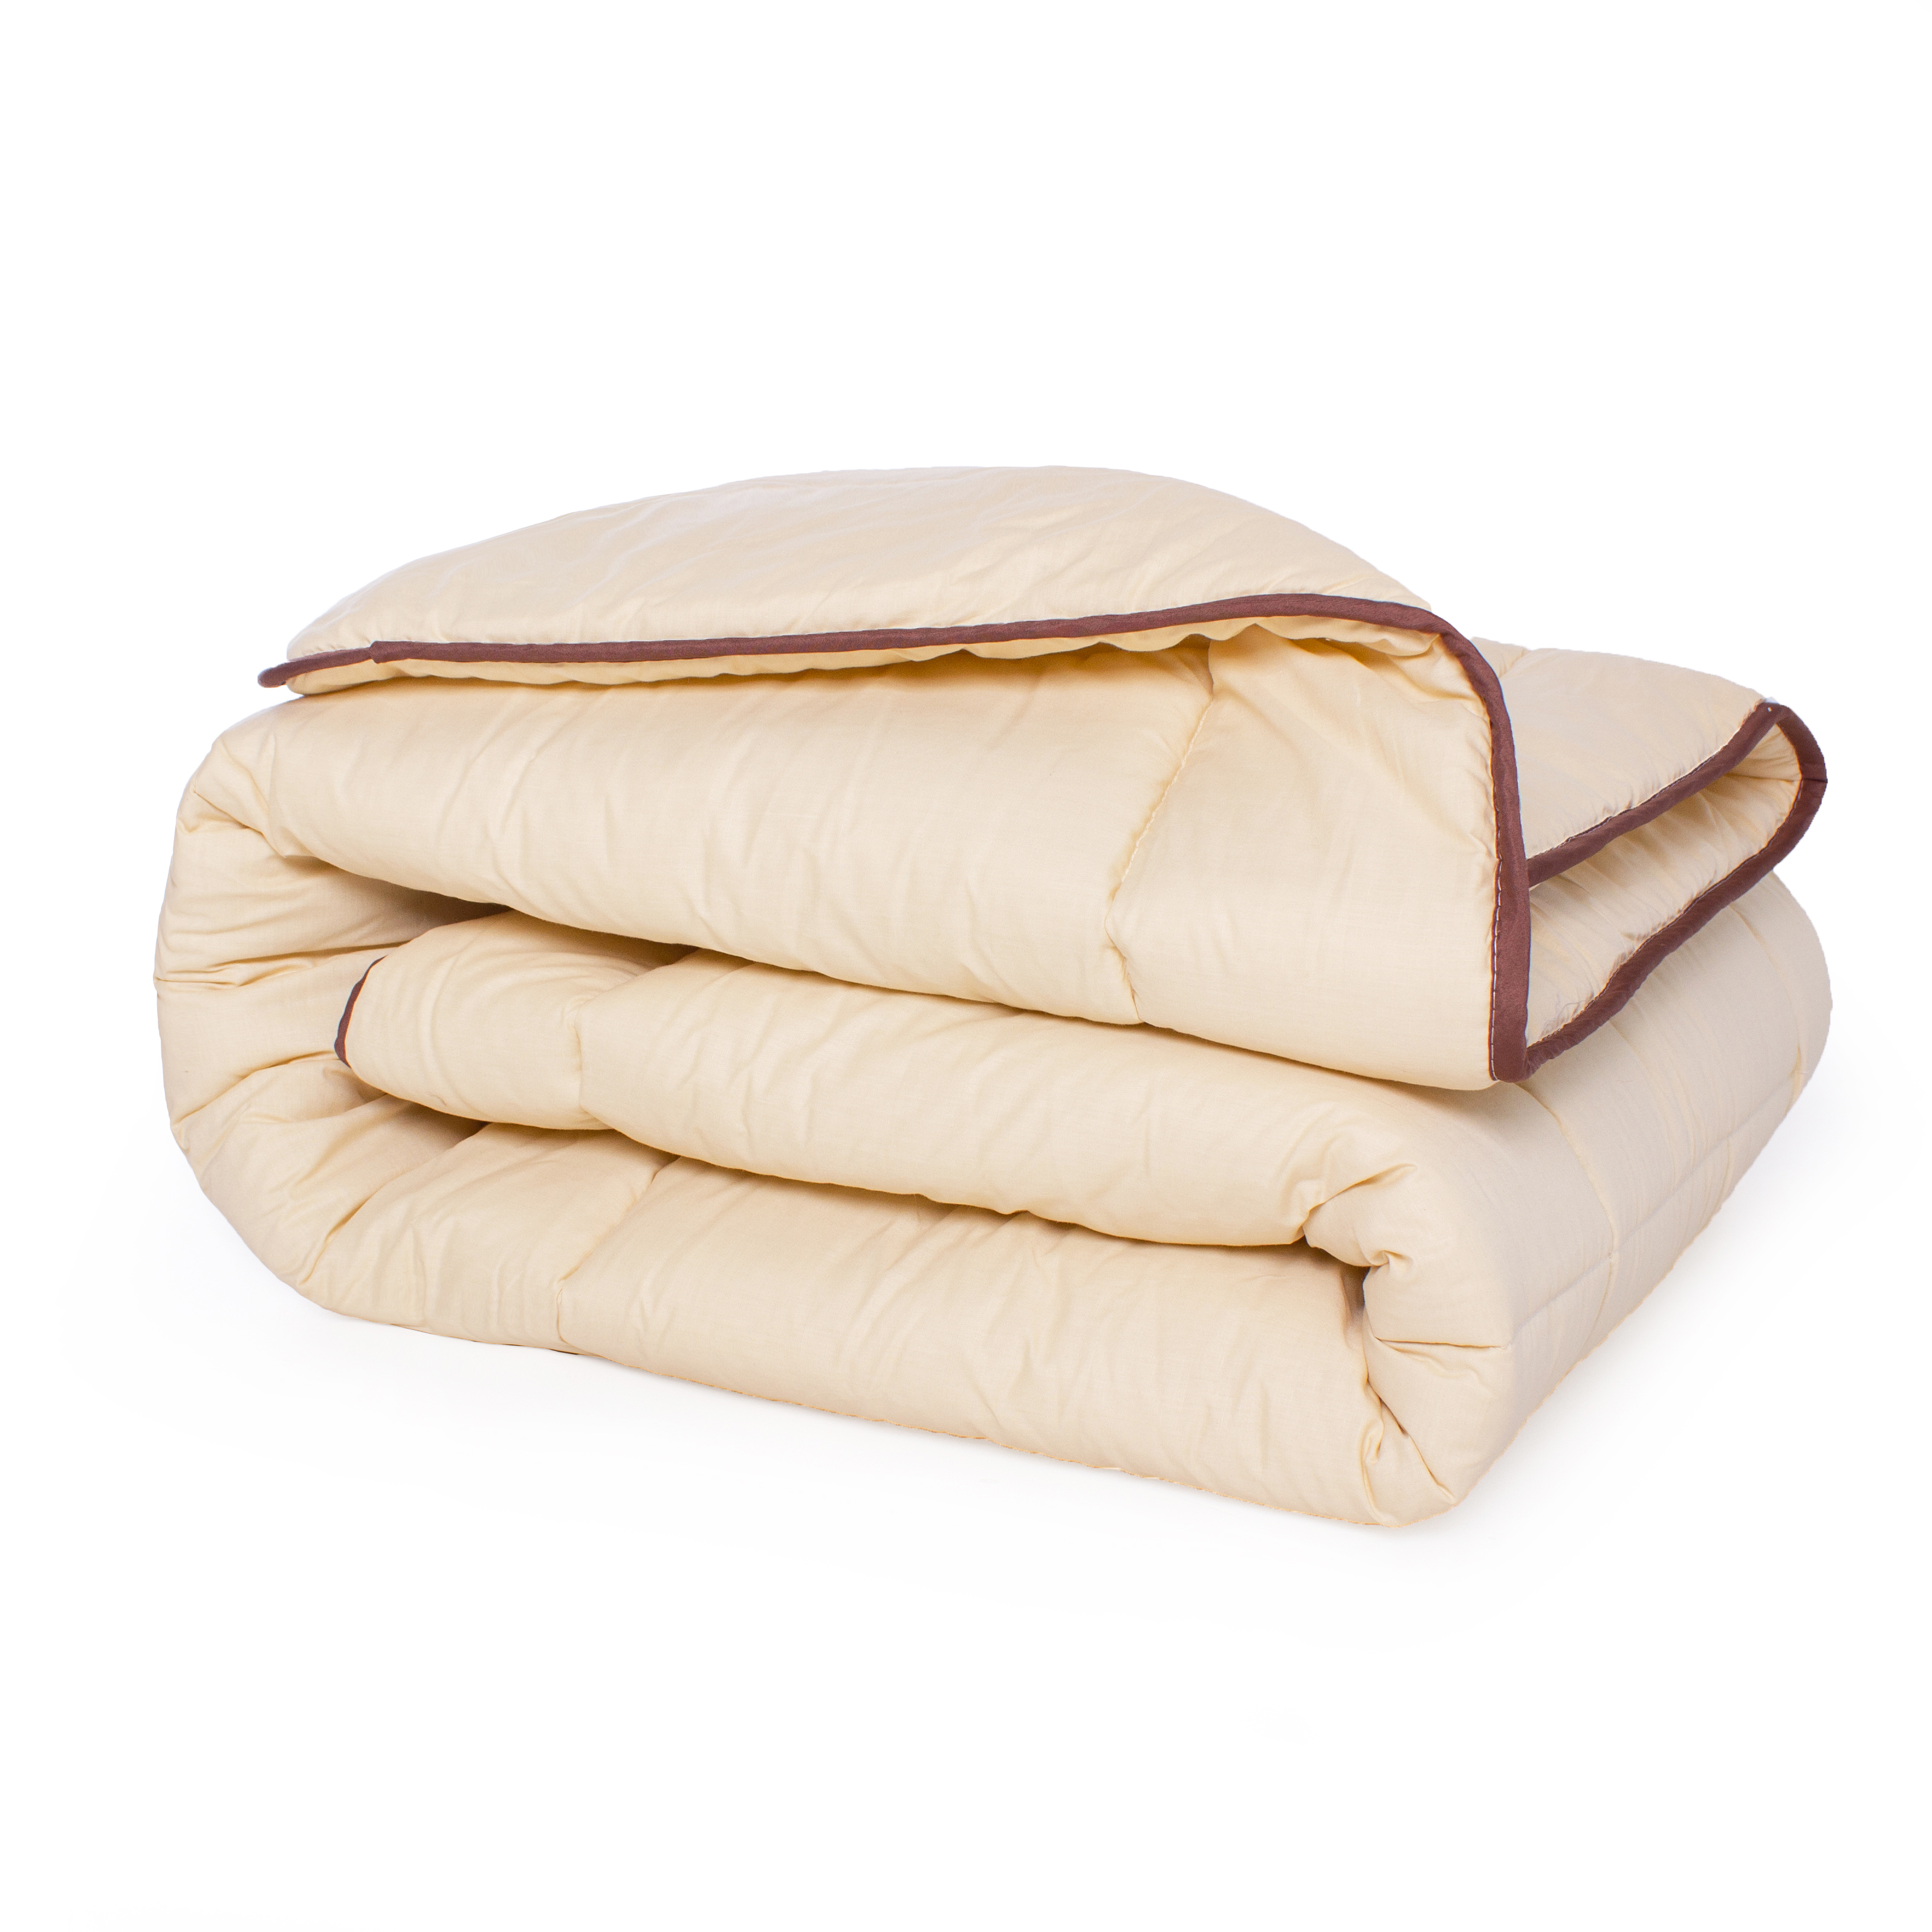 Одеяло шерстяное MirSon Carmela №0335, зимнее, 200x220 см, бежевое - фото 2